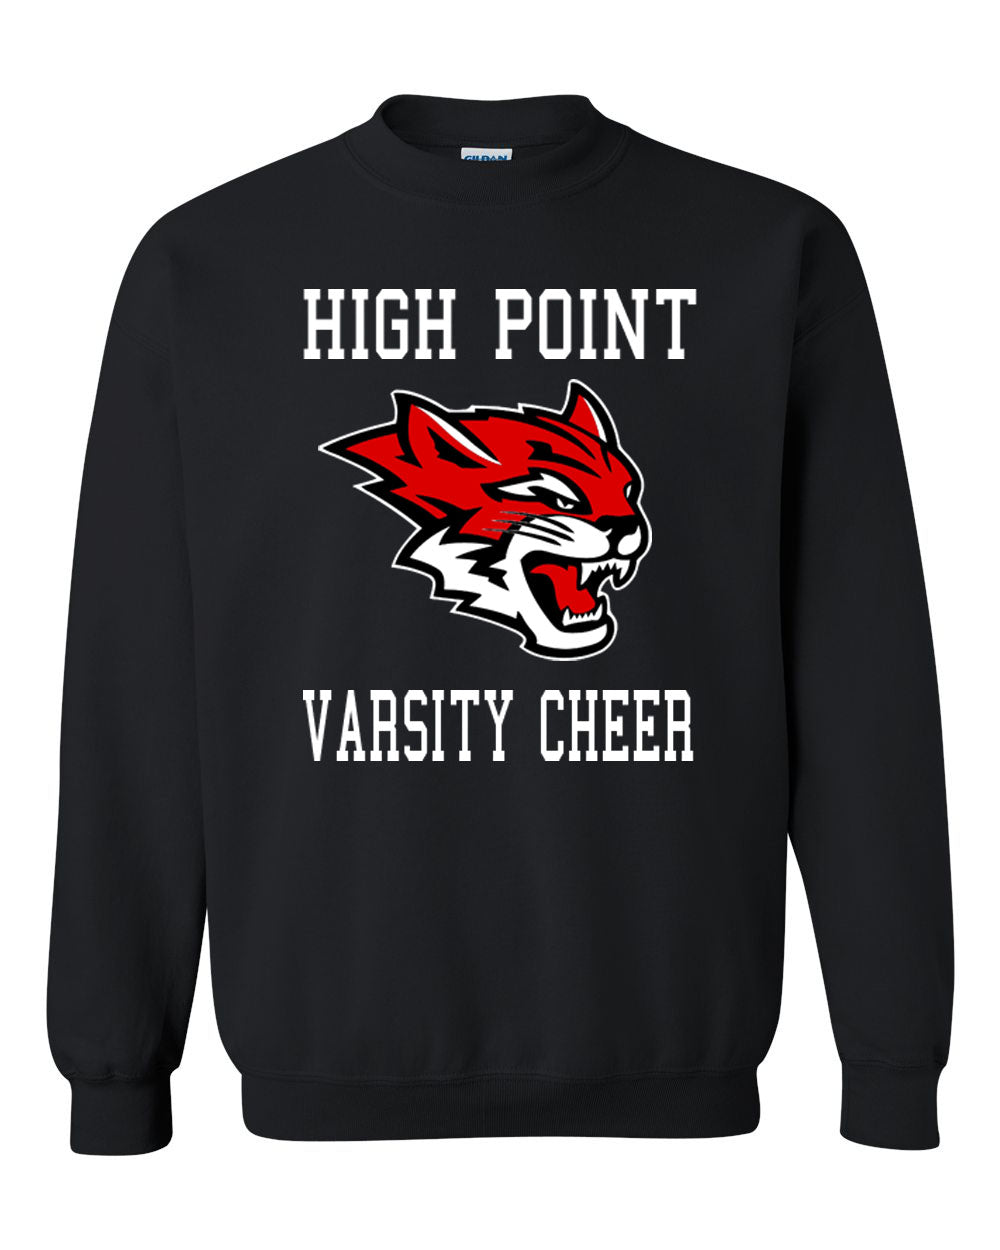 Wildcats Cheer Design 3 non hooded sweatshirt